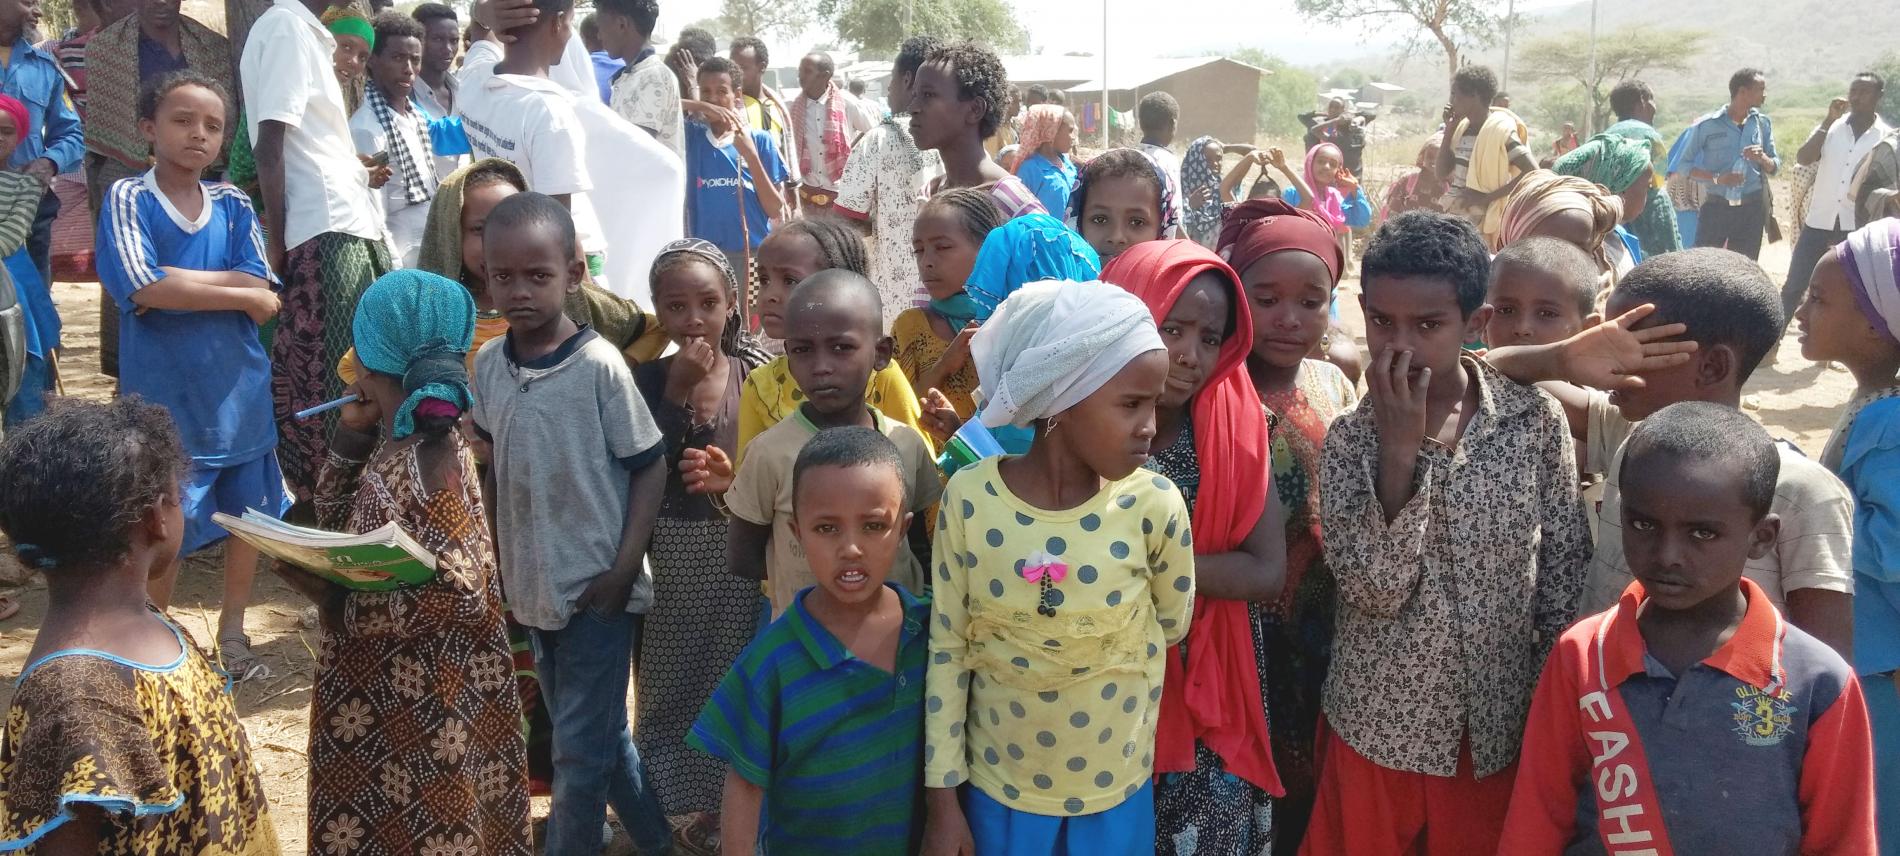 Kinder in Äthiopien im Afar-Gebiet. Ärzte der Welt setzt sich dort gegen die weibliche Genitalverstümmelung ein. Foto: Ärzte der Welt